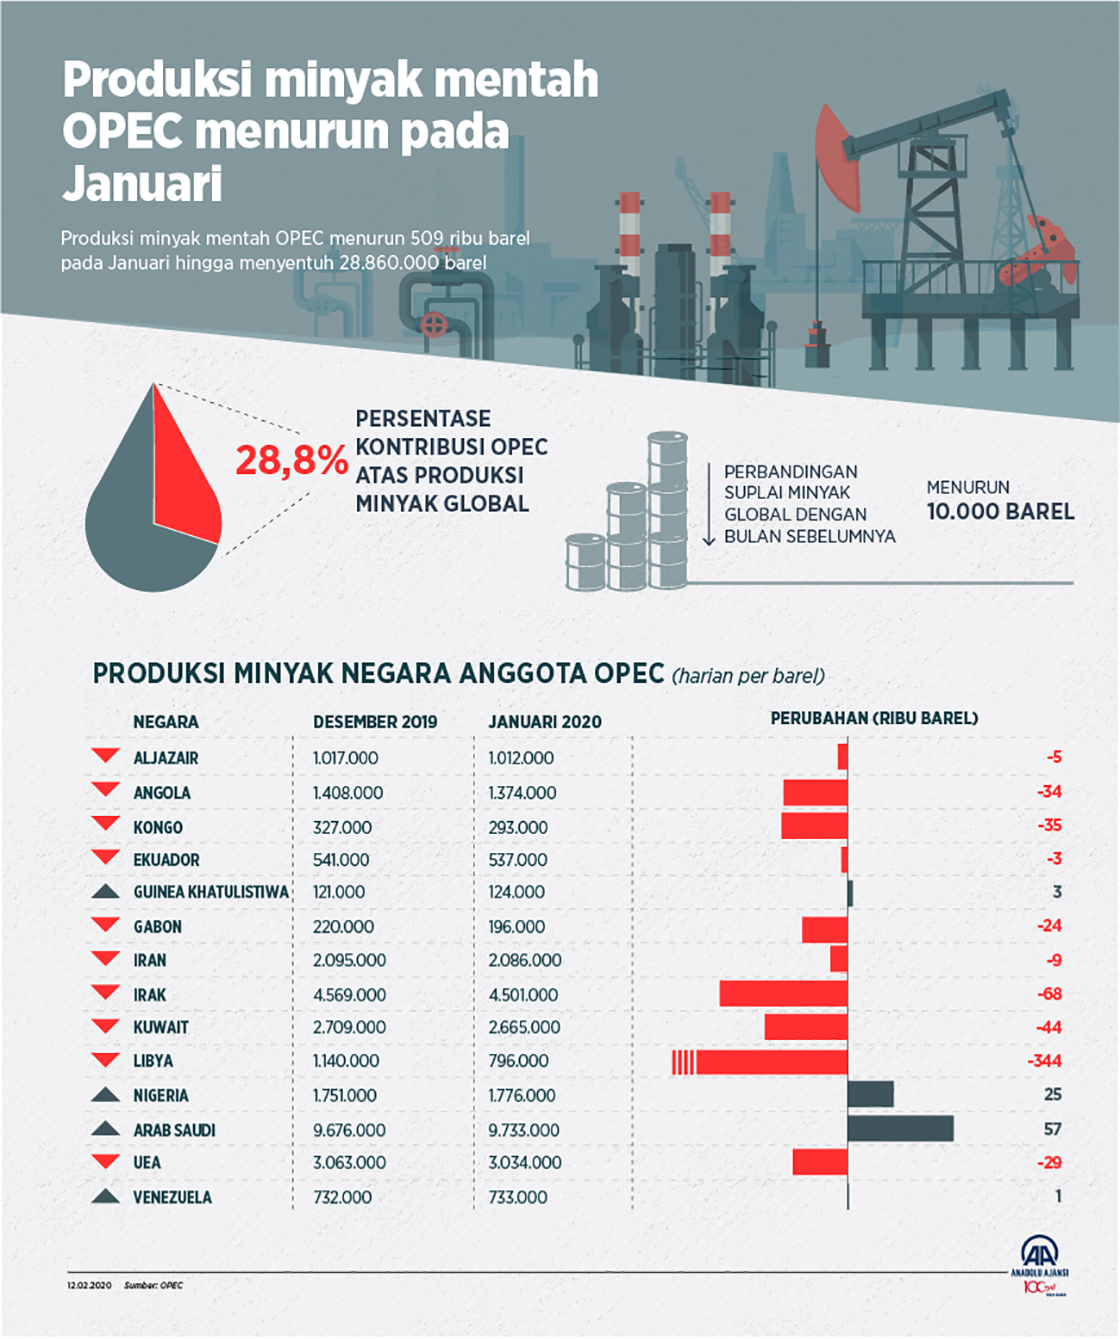 Produksi minyak mentah OPEC menurun pada Januari 